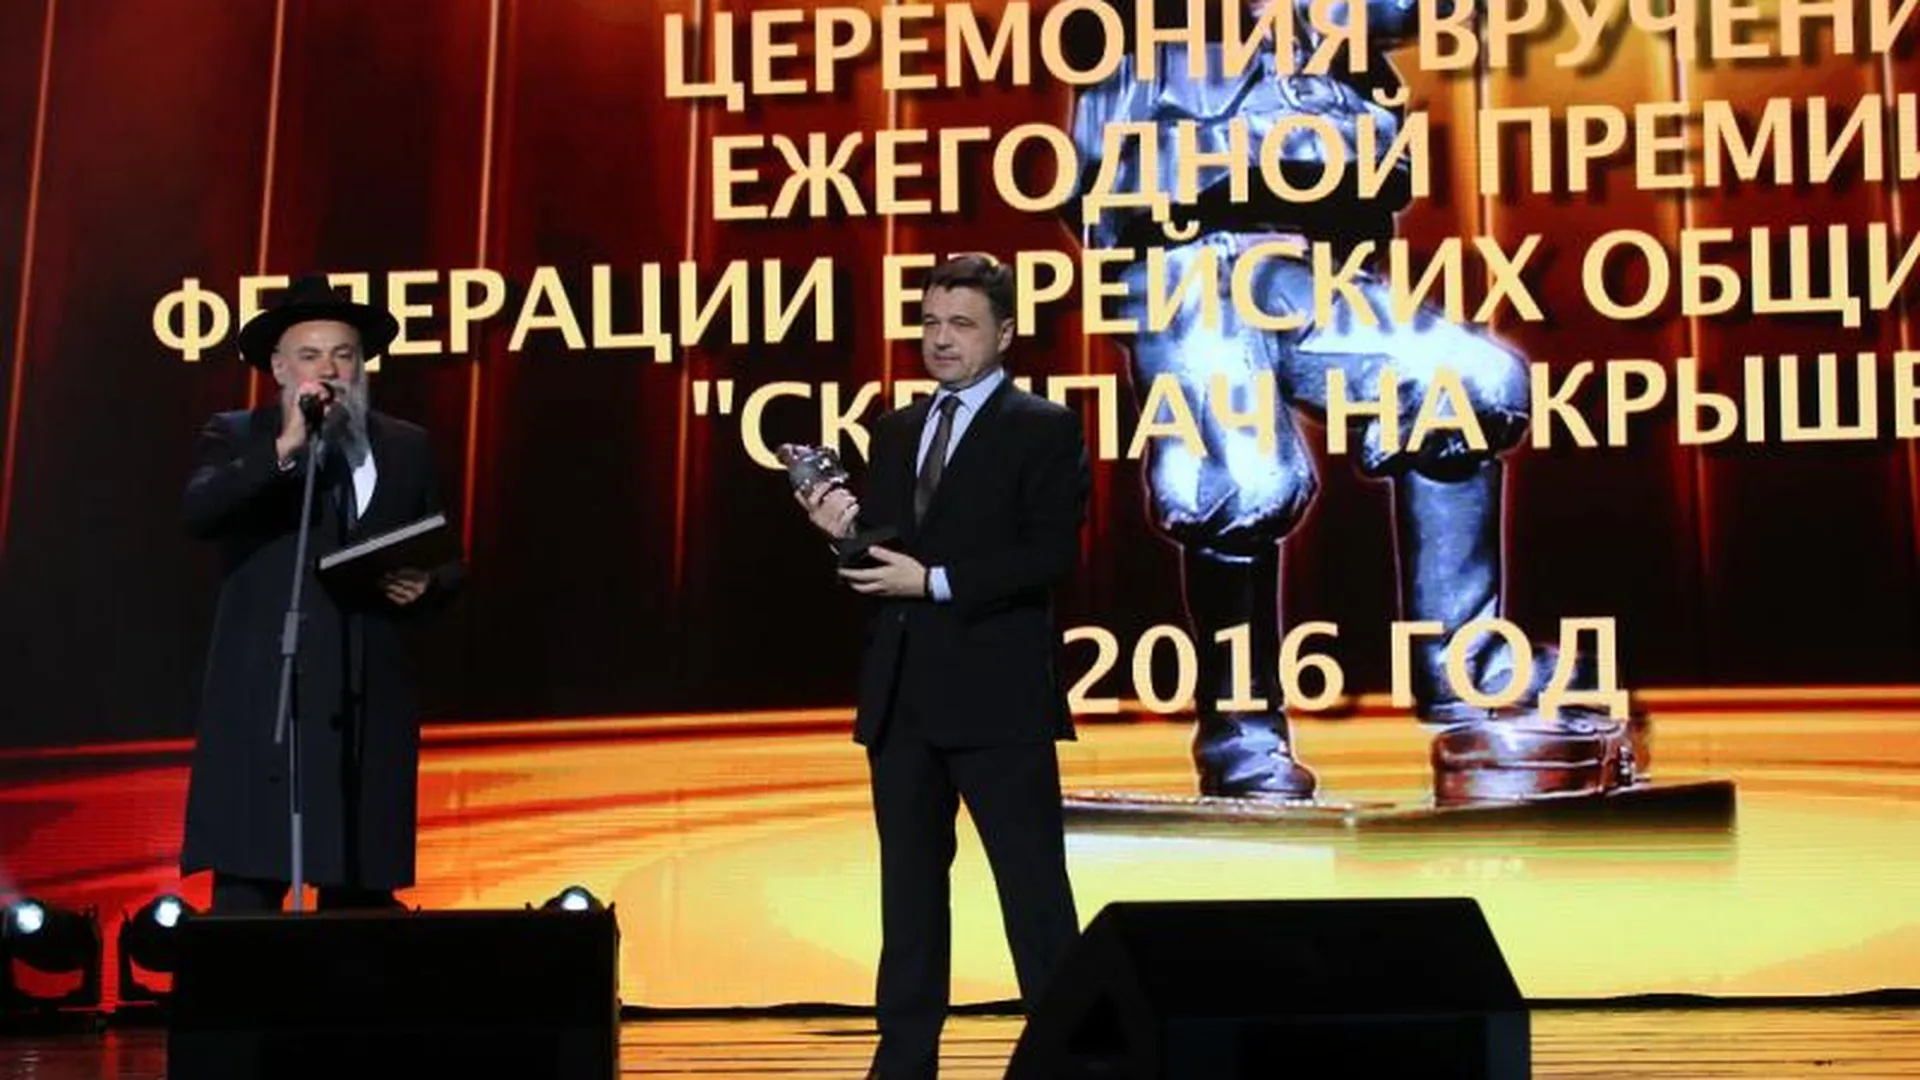 Воробьев получил премию за открытие еврейского общинного центра в Жуковке